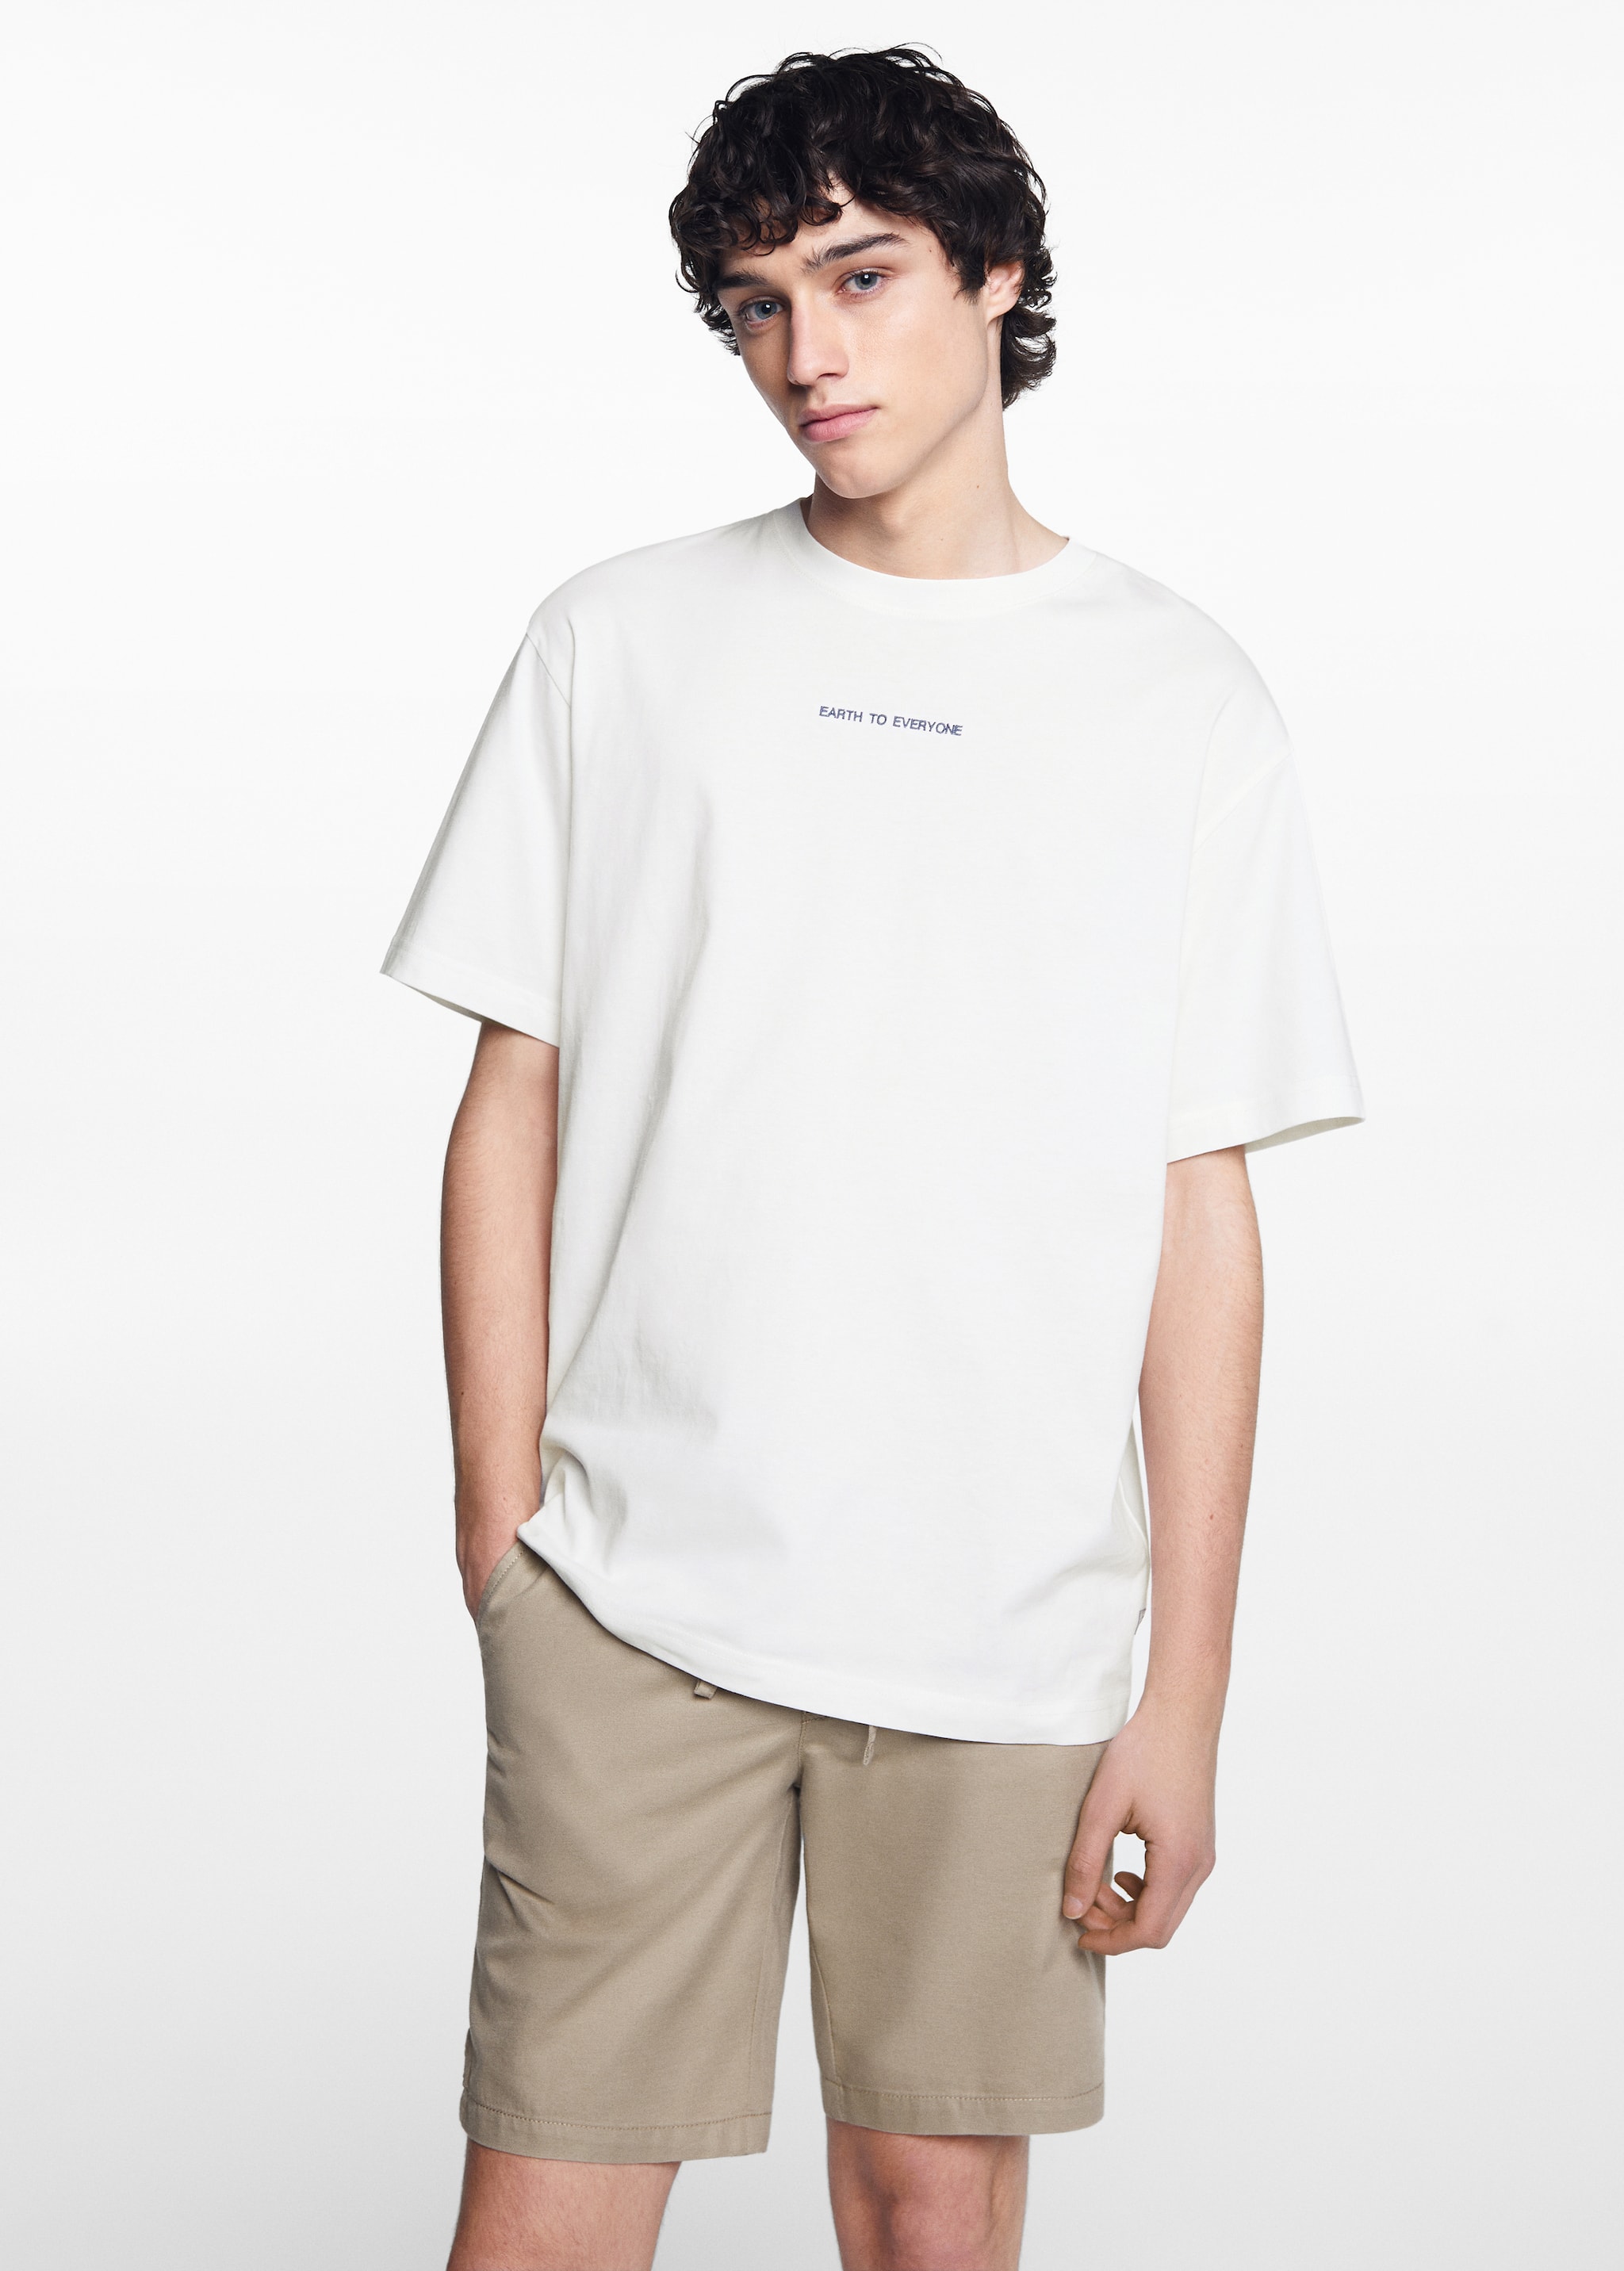 Camiseta estampada manga corta - Plano medio